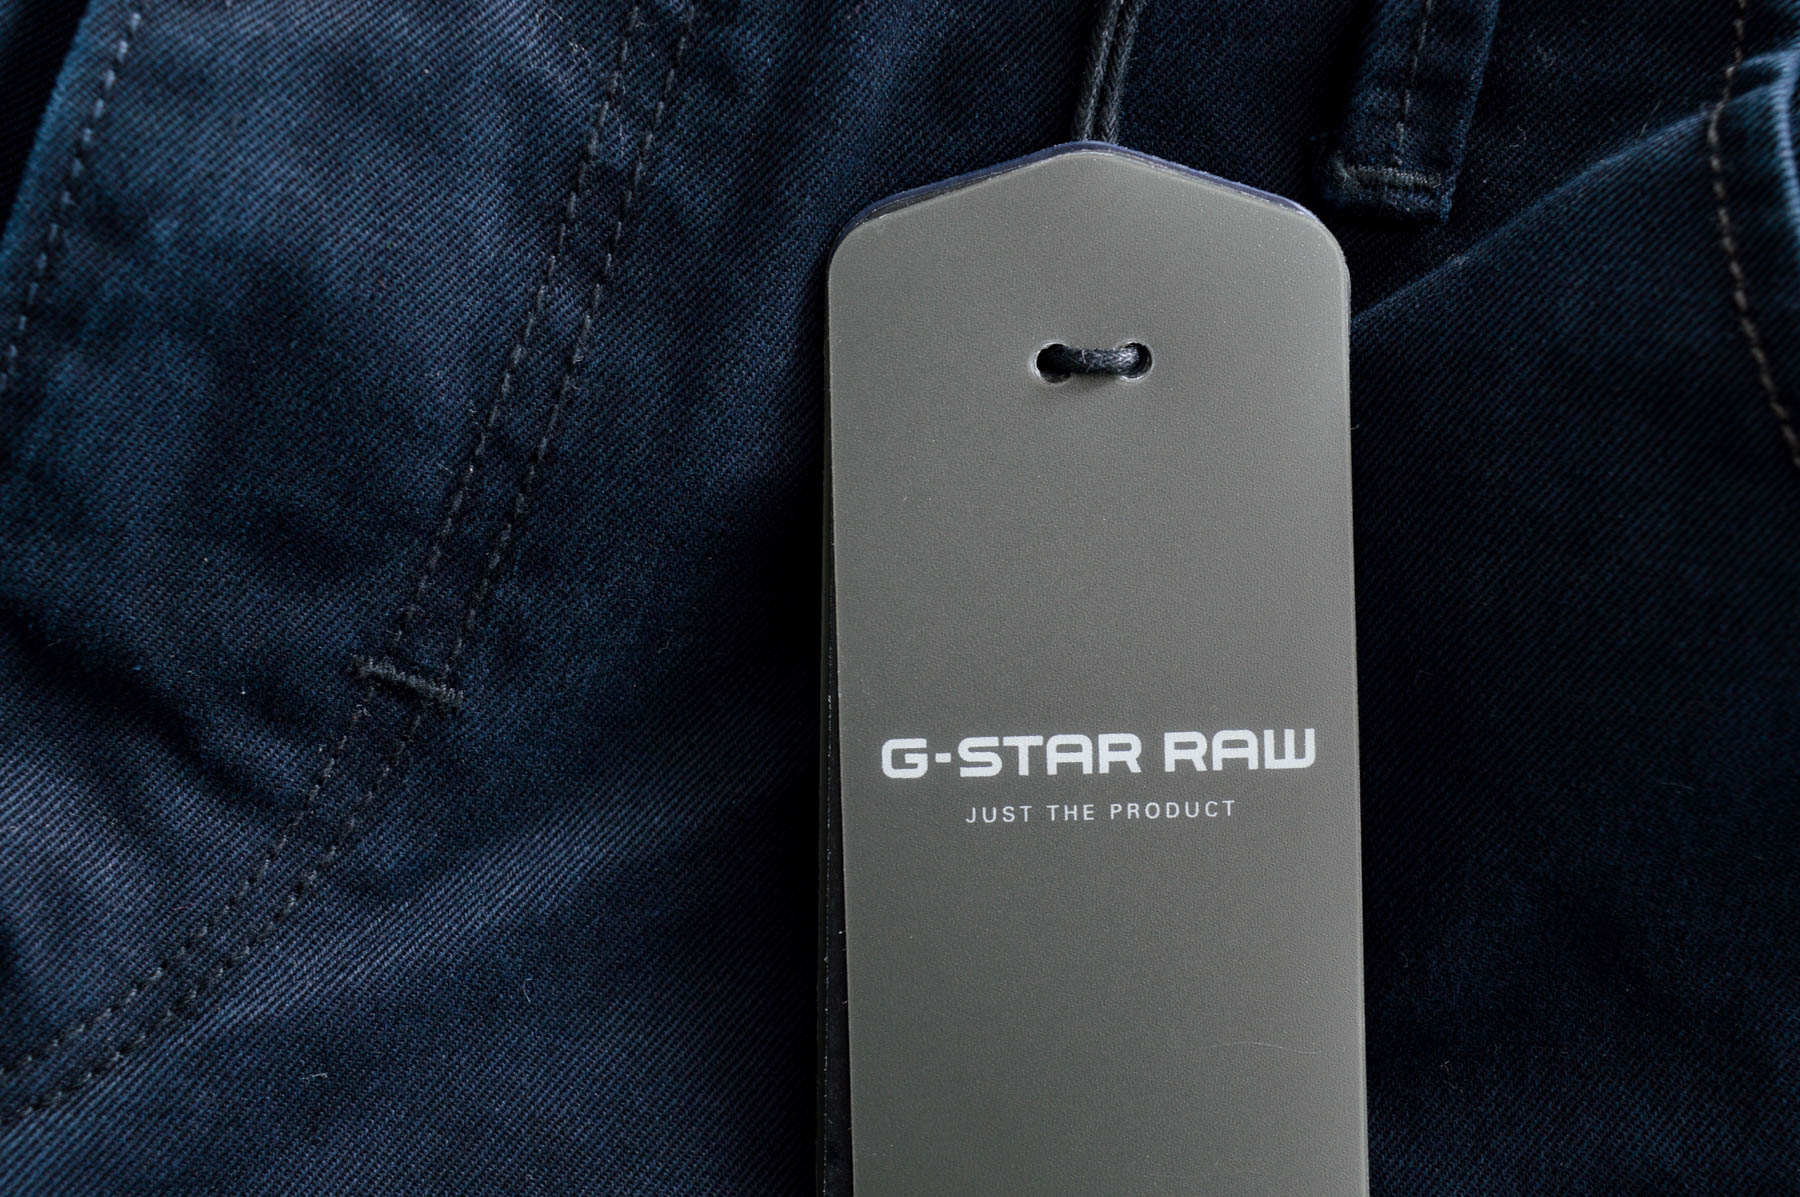 Ανδρικό παντελόνι - G - STAR RAW - 2